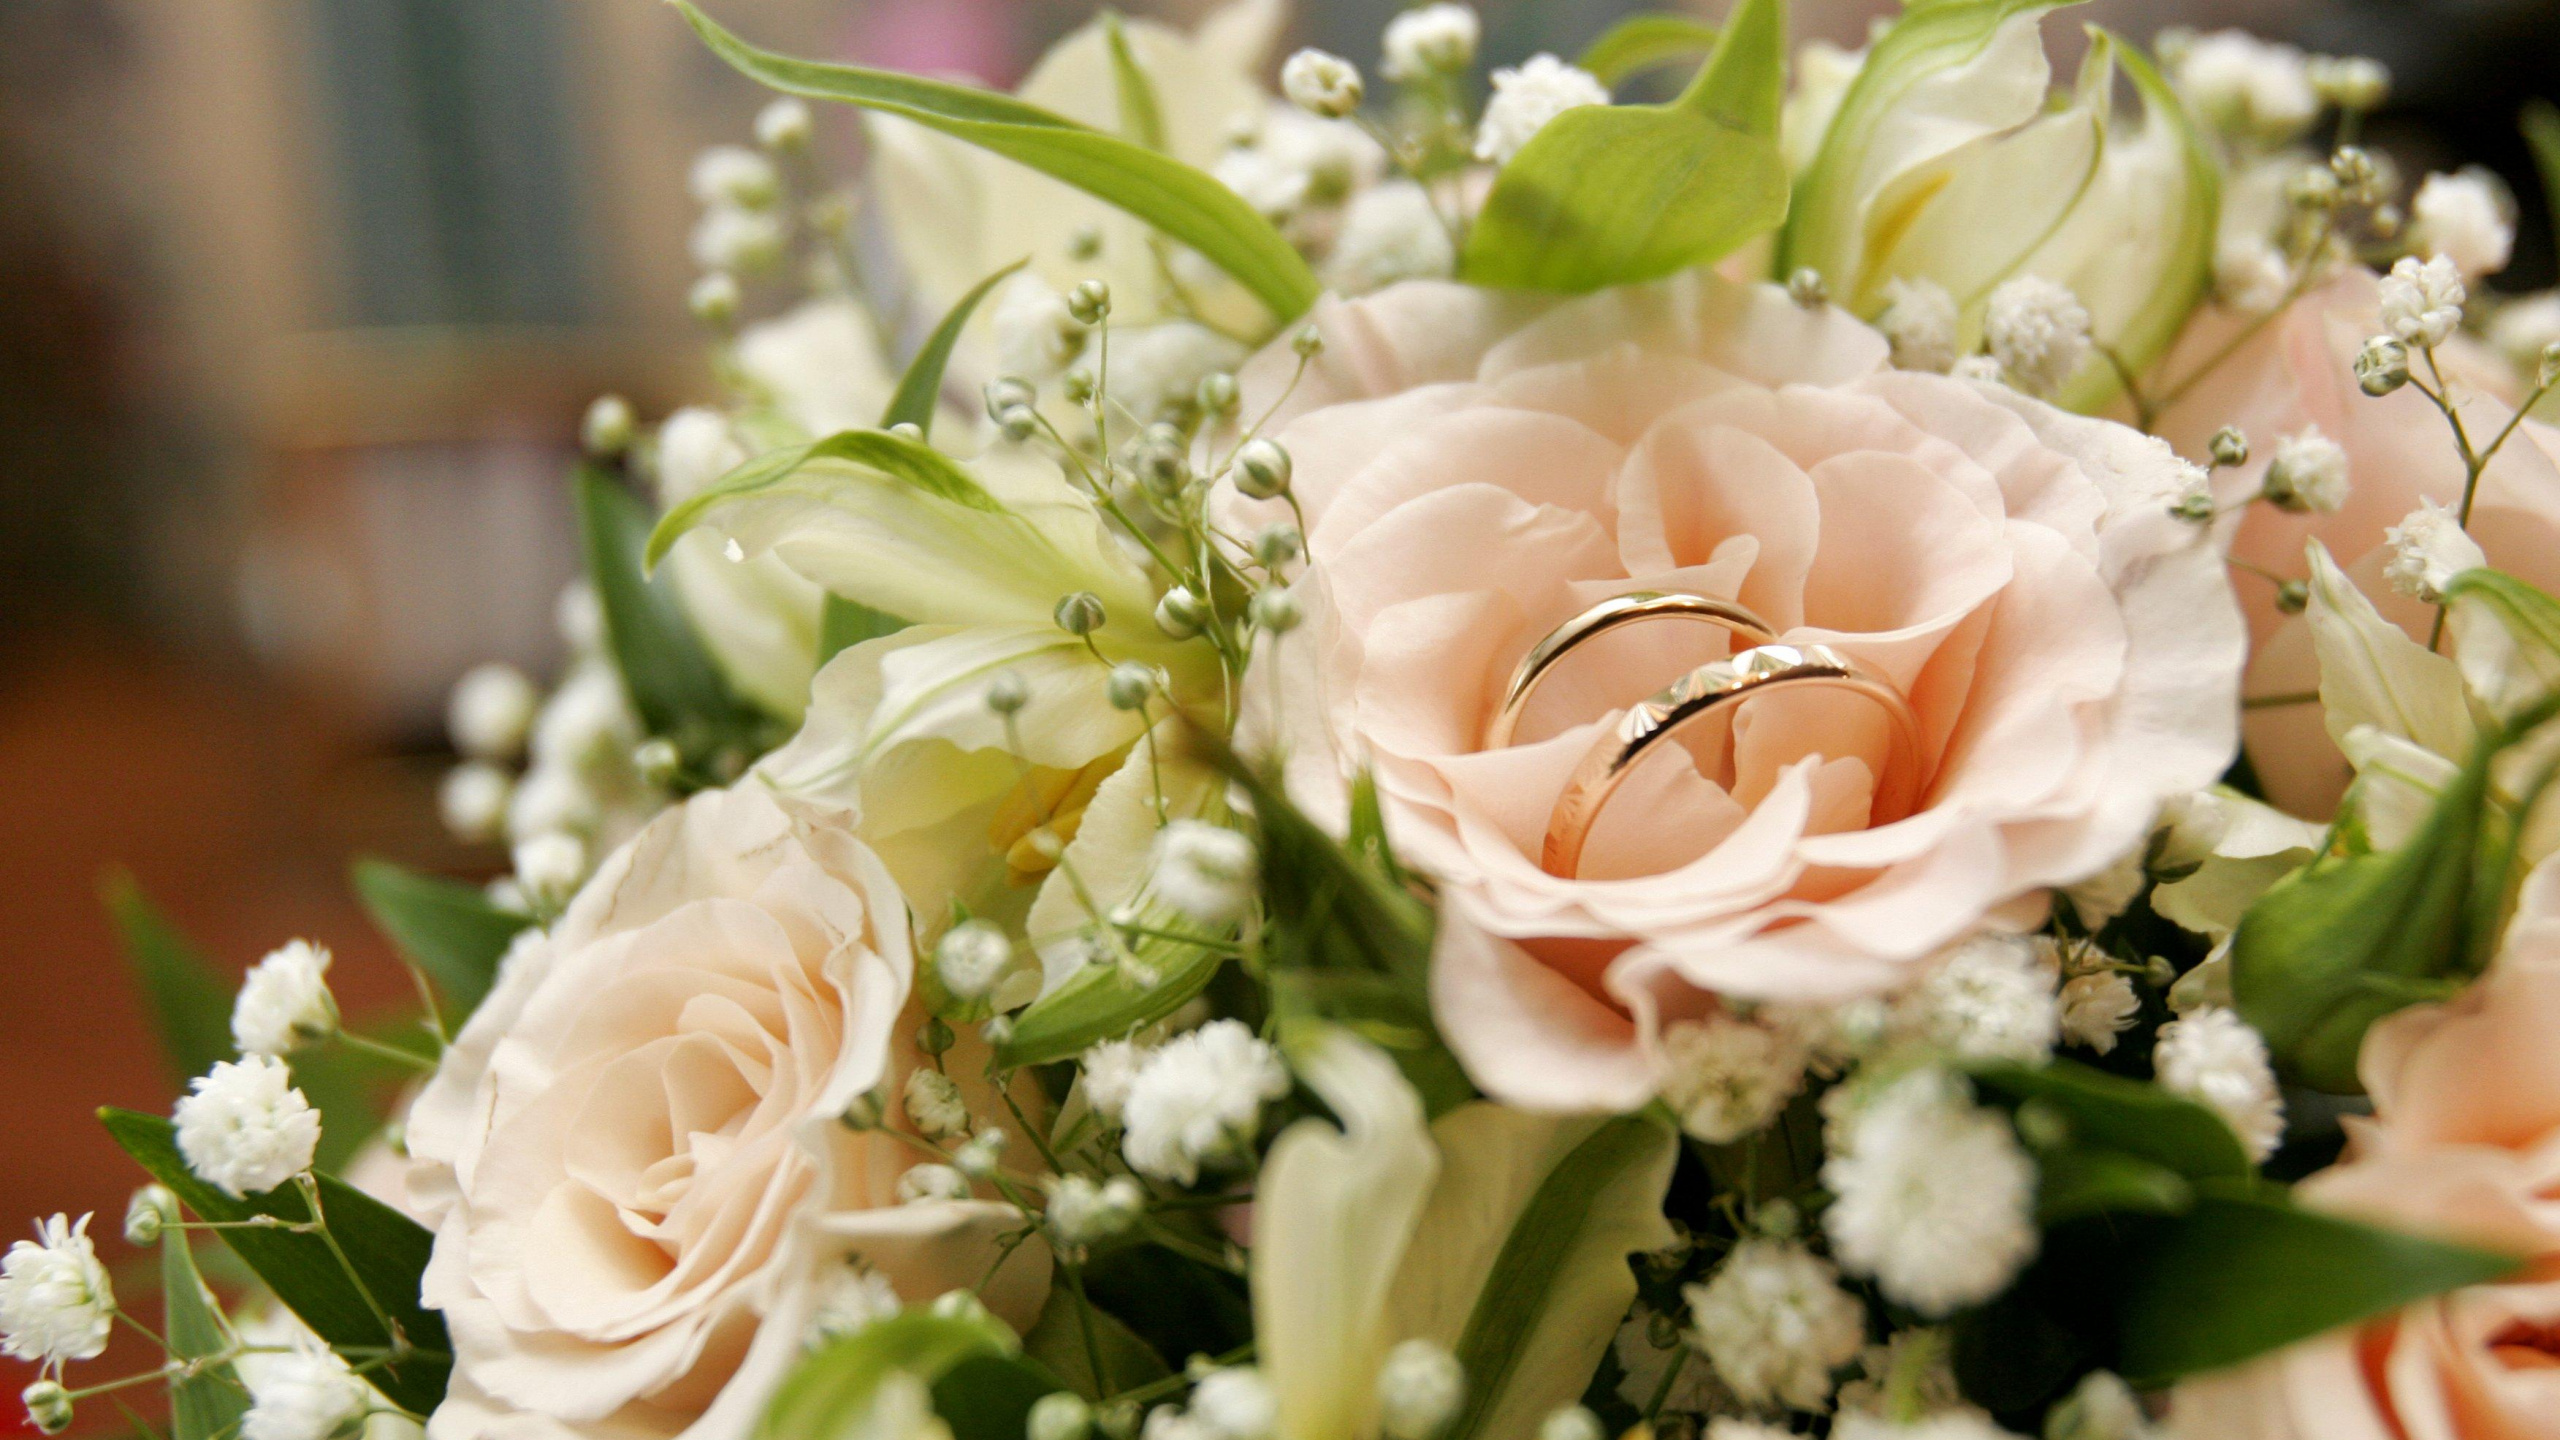 订婚戒指, 花安排, 花艺, 切花, 玫瑰花园 壁纸 2560x1440 允许